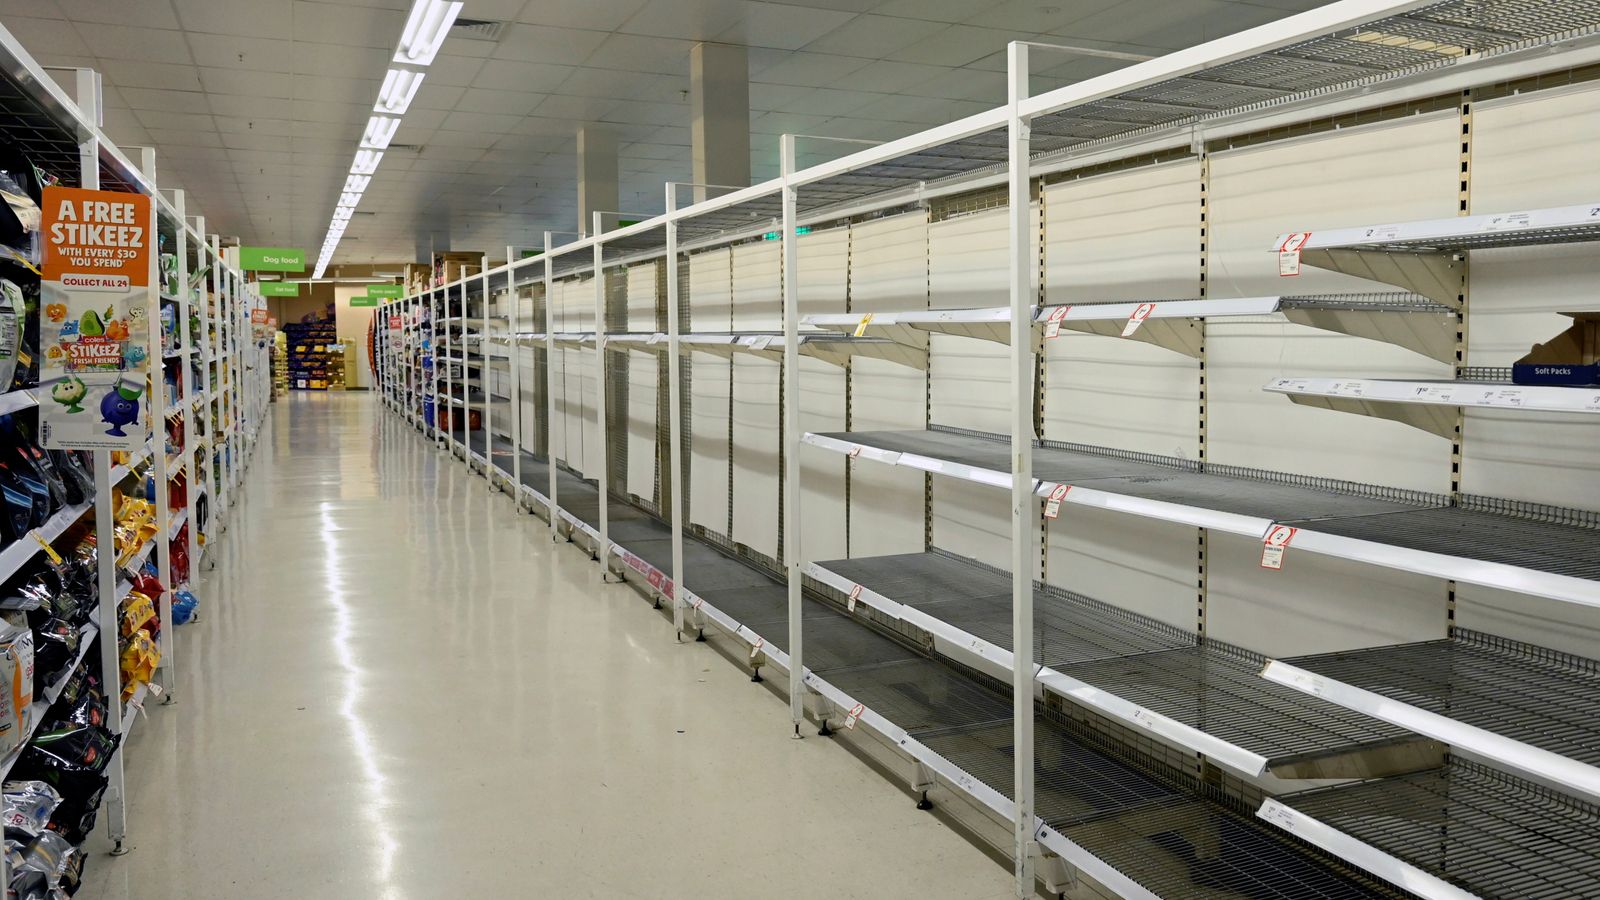 சண்டை போட்டுக் கொள்ளும் பெண்கள்-அவுஸ்திரேலியா- Skynews-empty-shelves-sueprmarkets_4940662